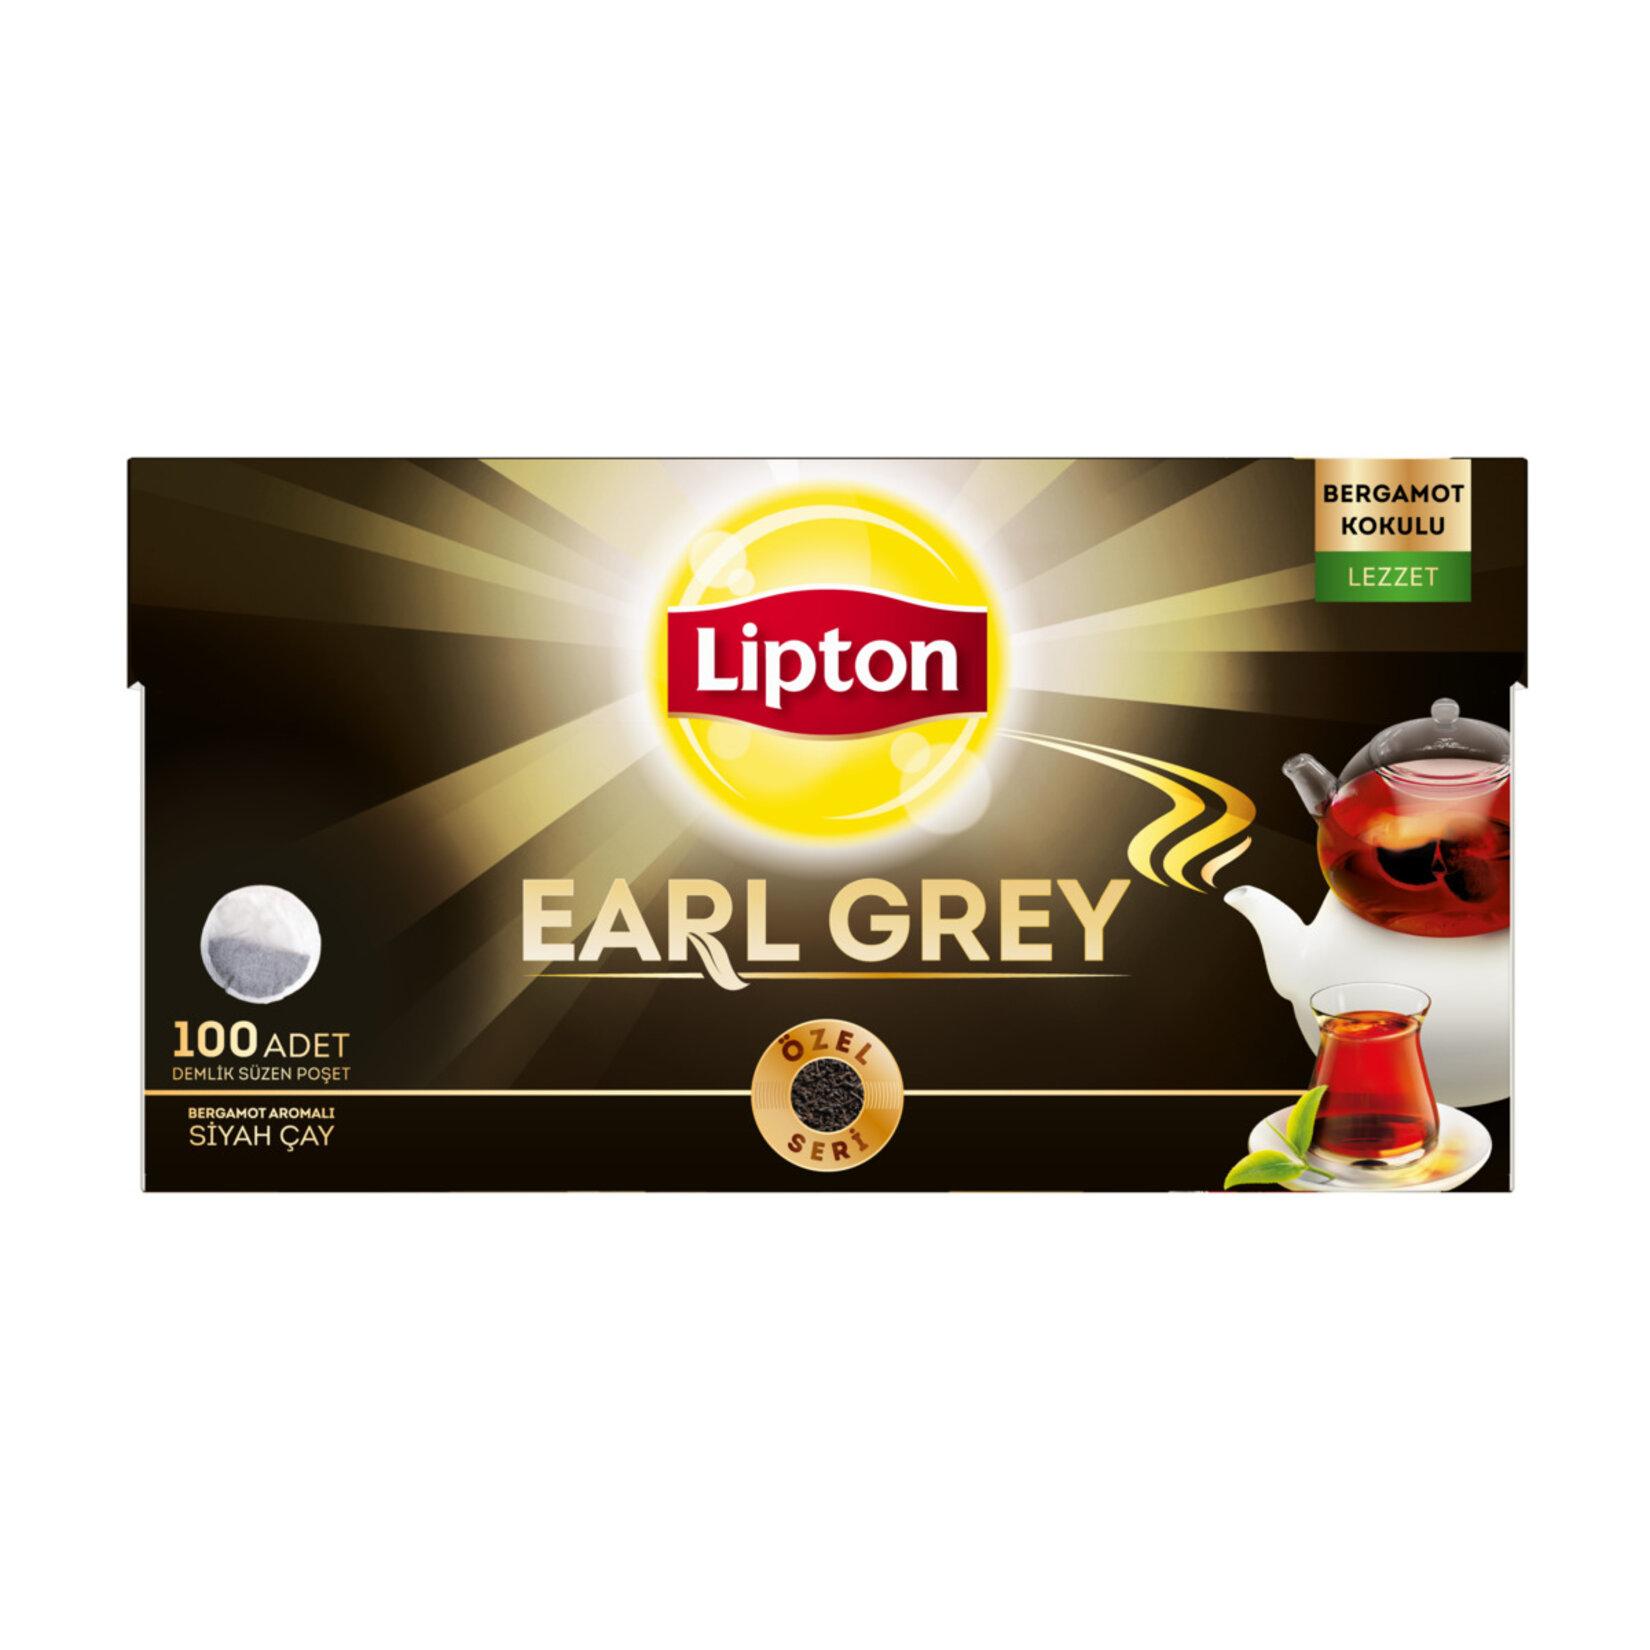 Lipton Earl Grey Bergamot Aromalı Demlik Poşet Çay 100'lü 6 Paket